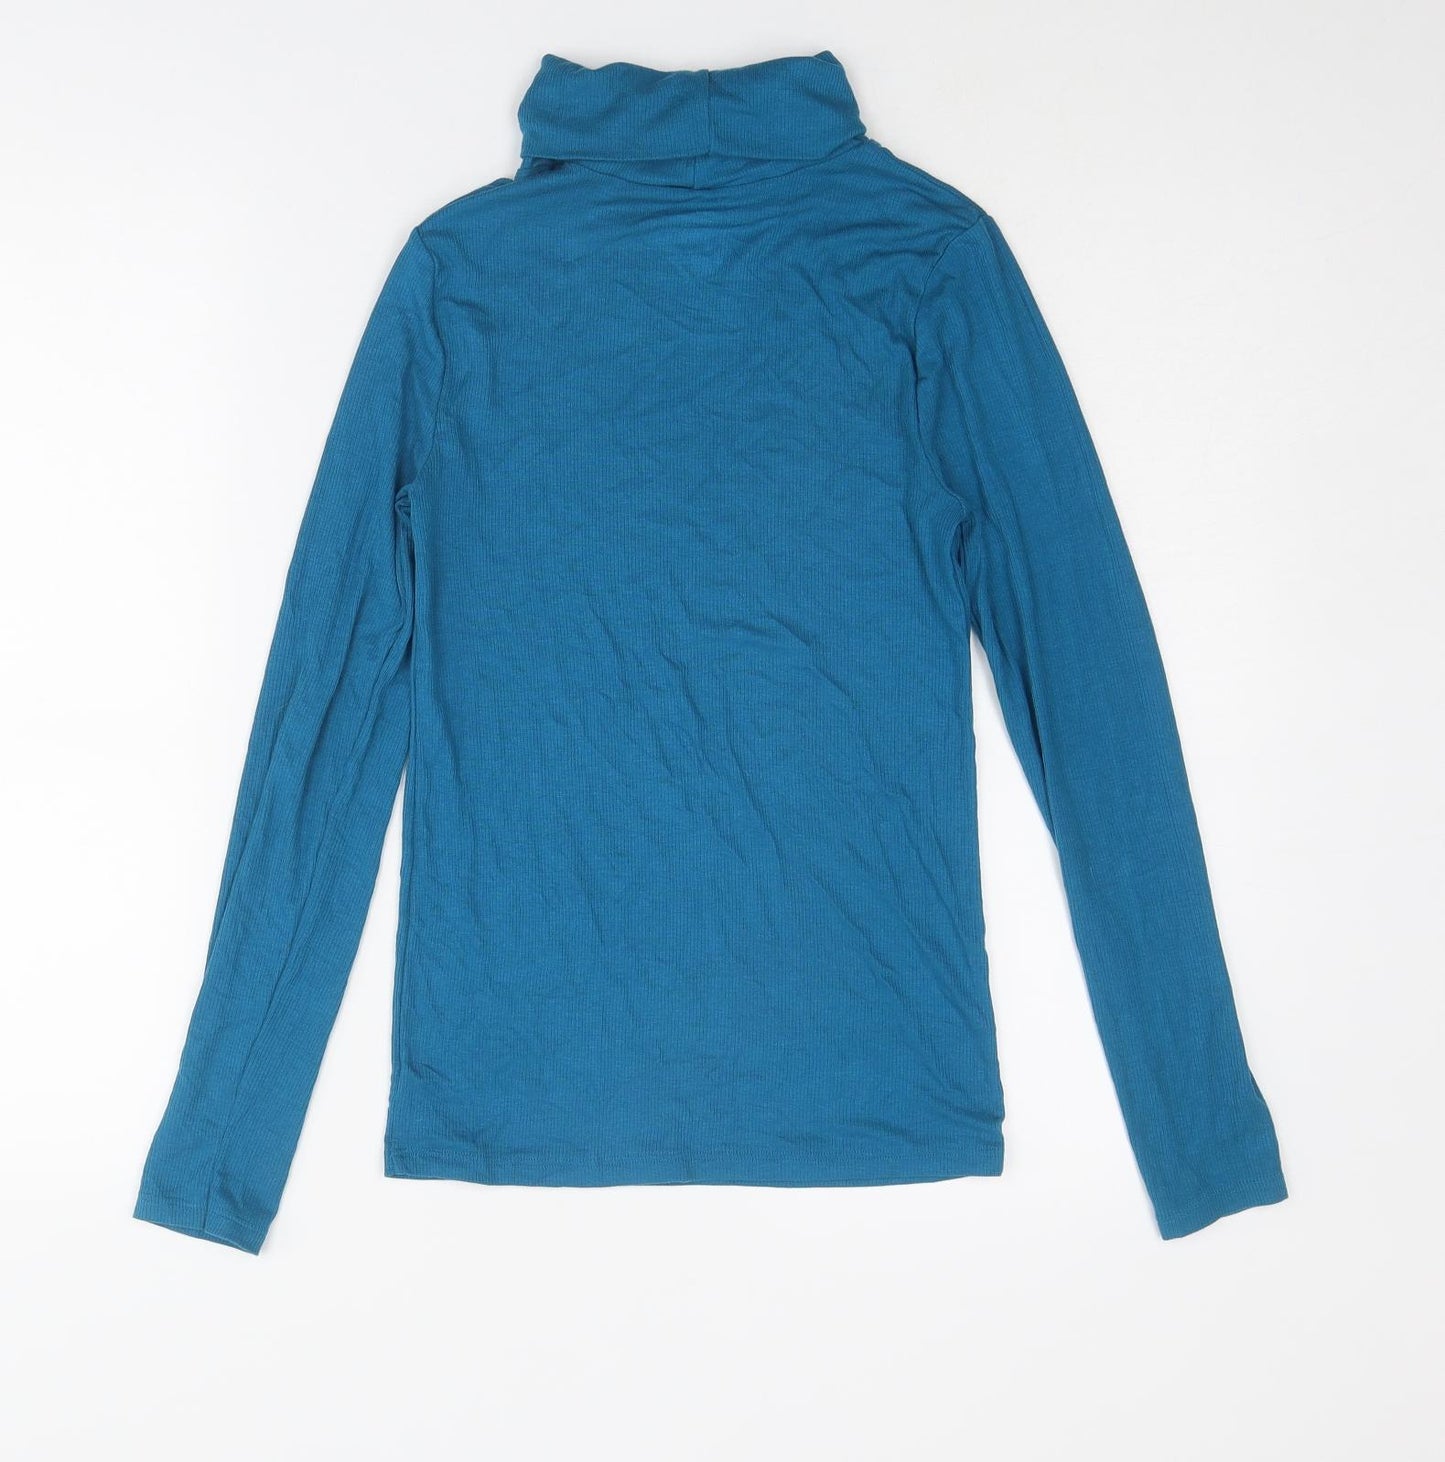 John Lewis Womens Blue Acrylic Basic T-Shirt Size 12 Roll Neck - Size 12-14